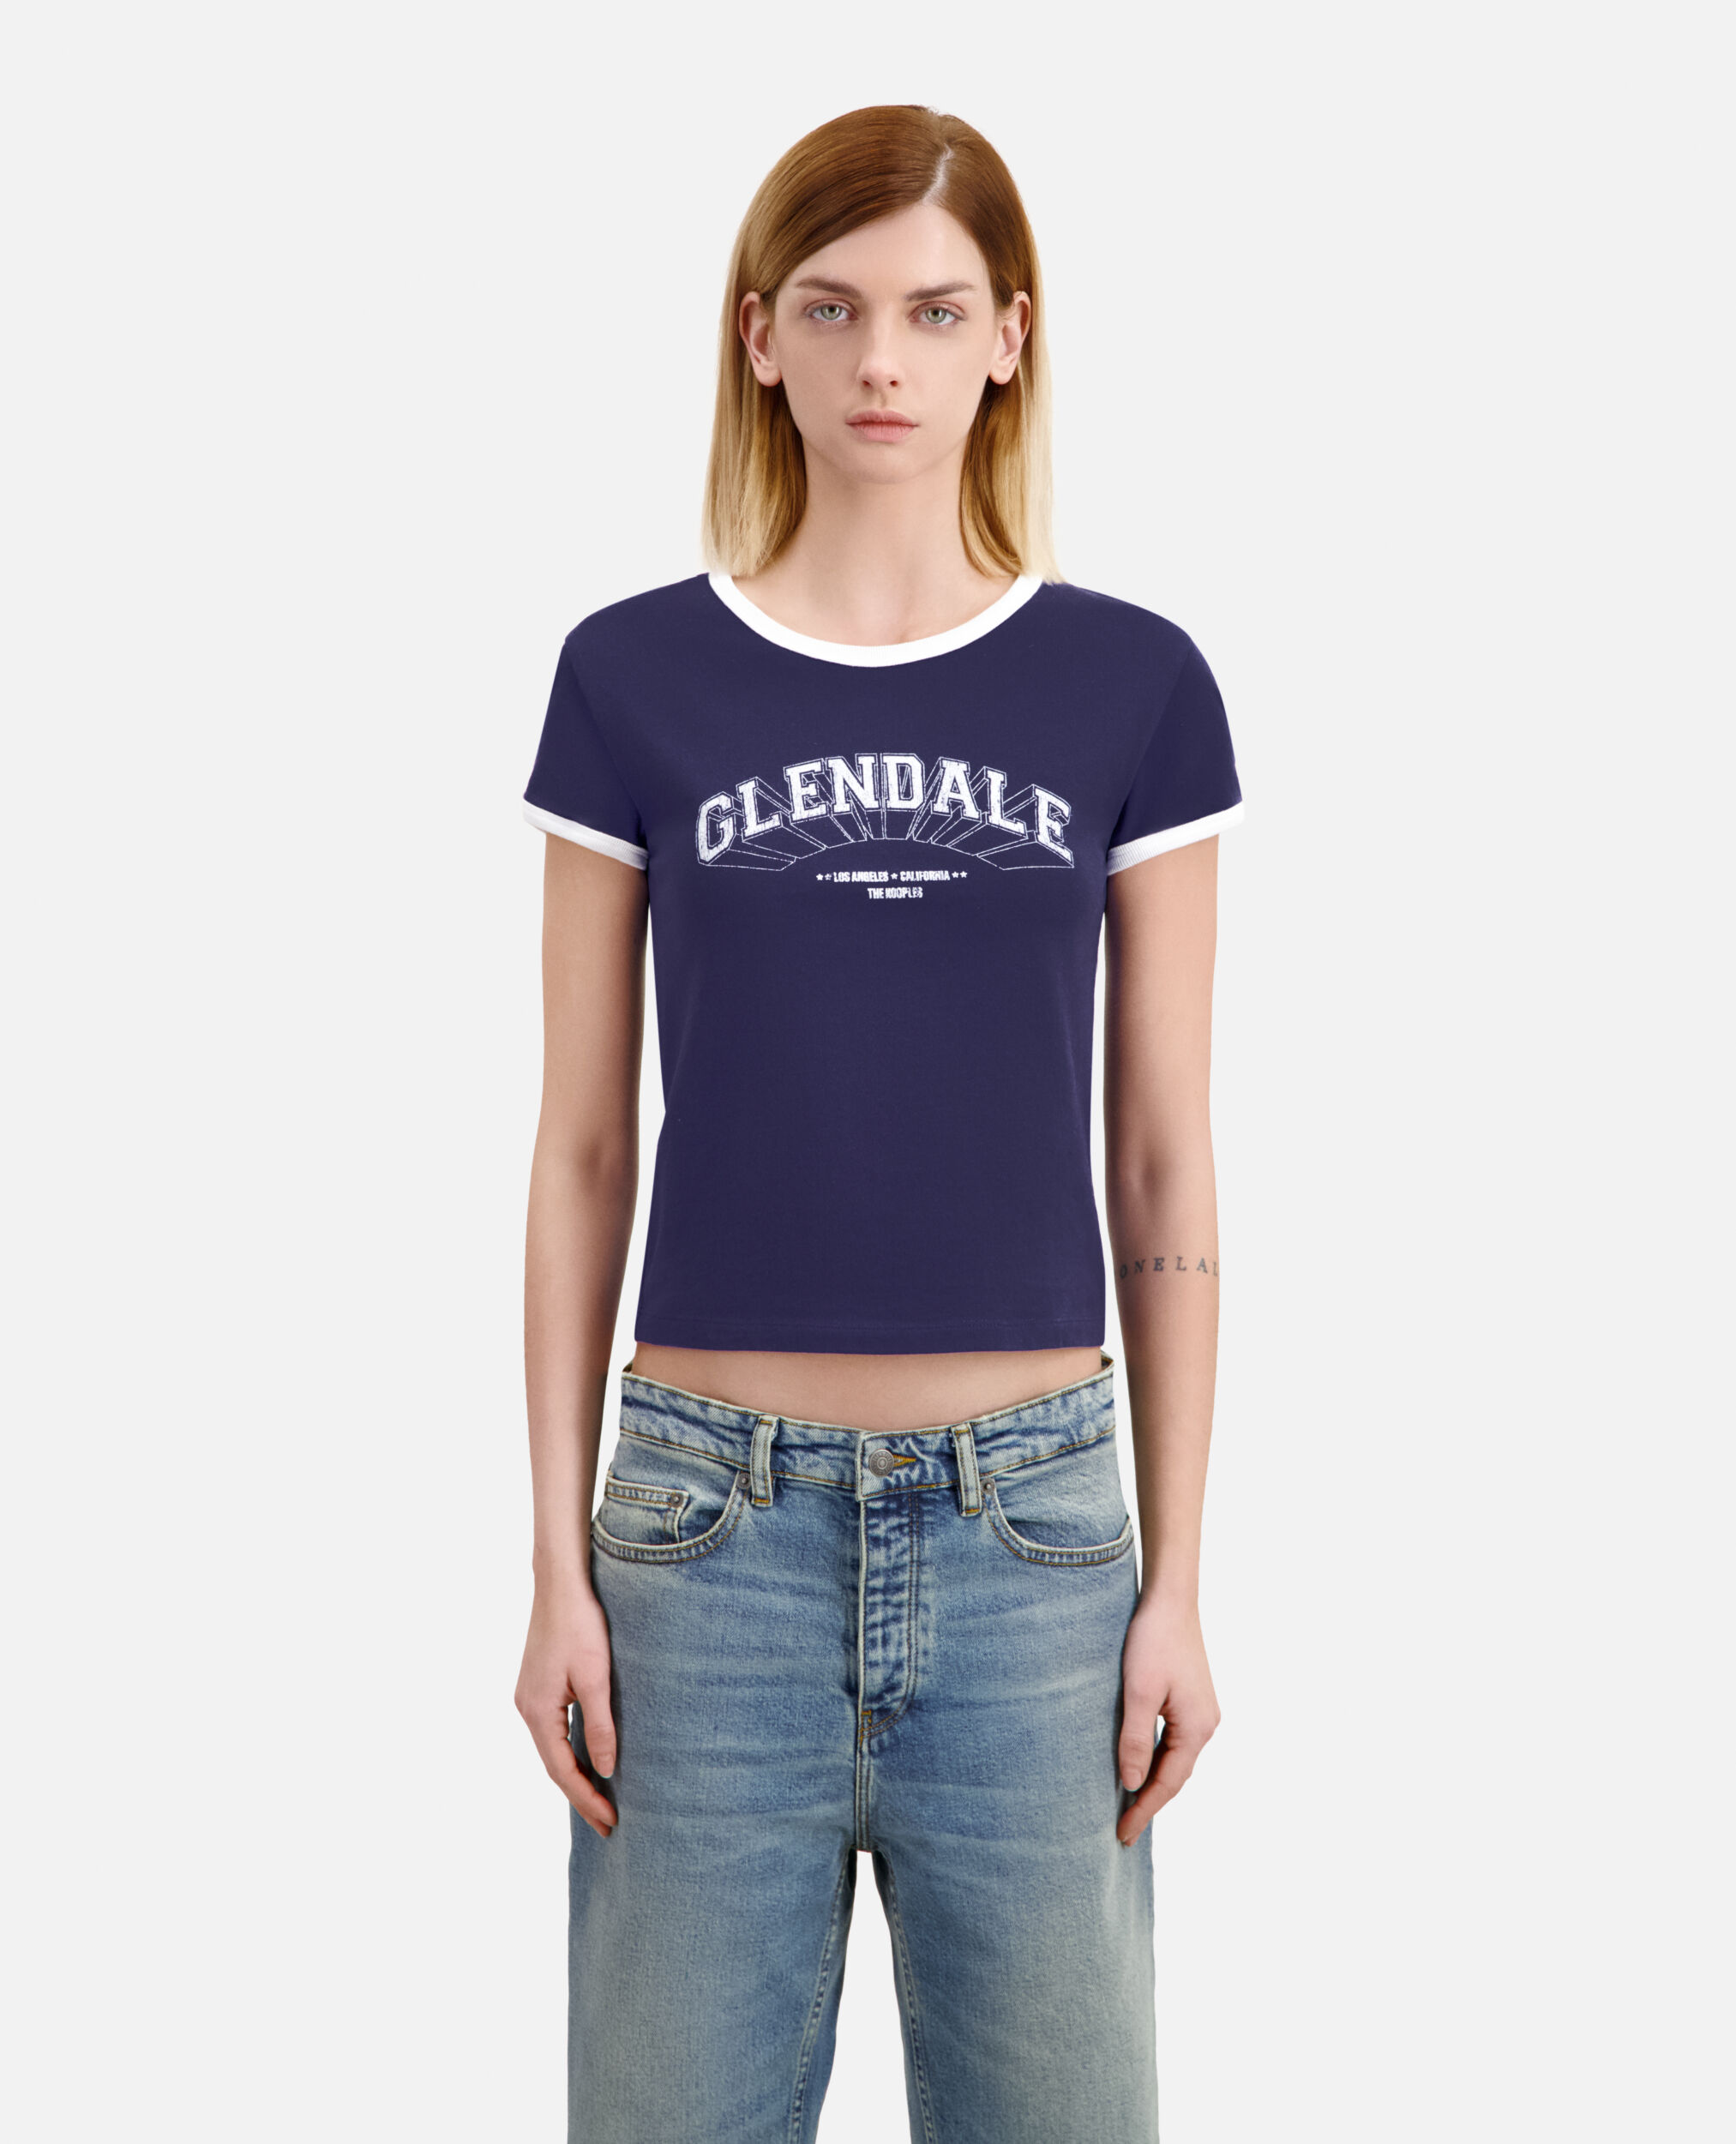 T-shirt bleu marine avec sérigraphie Glendale, WASHED NAVY, hi-res image number null